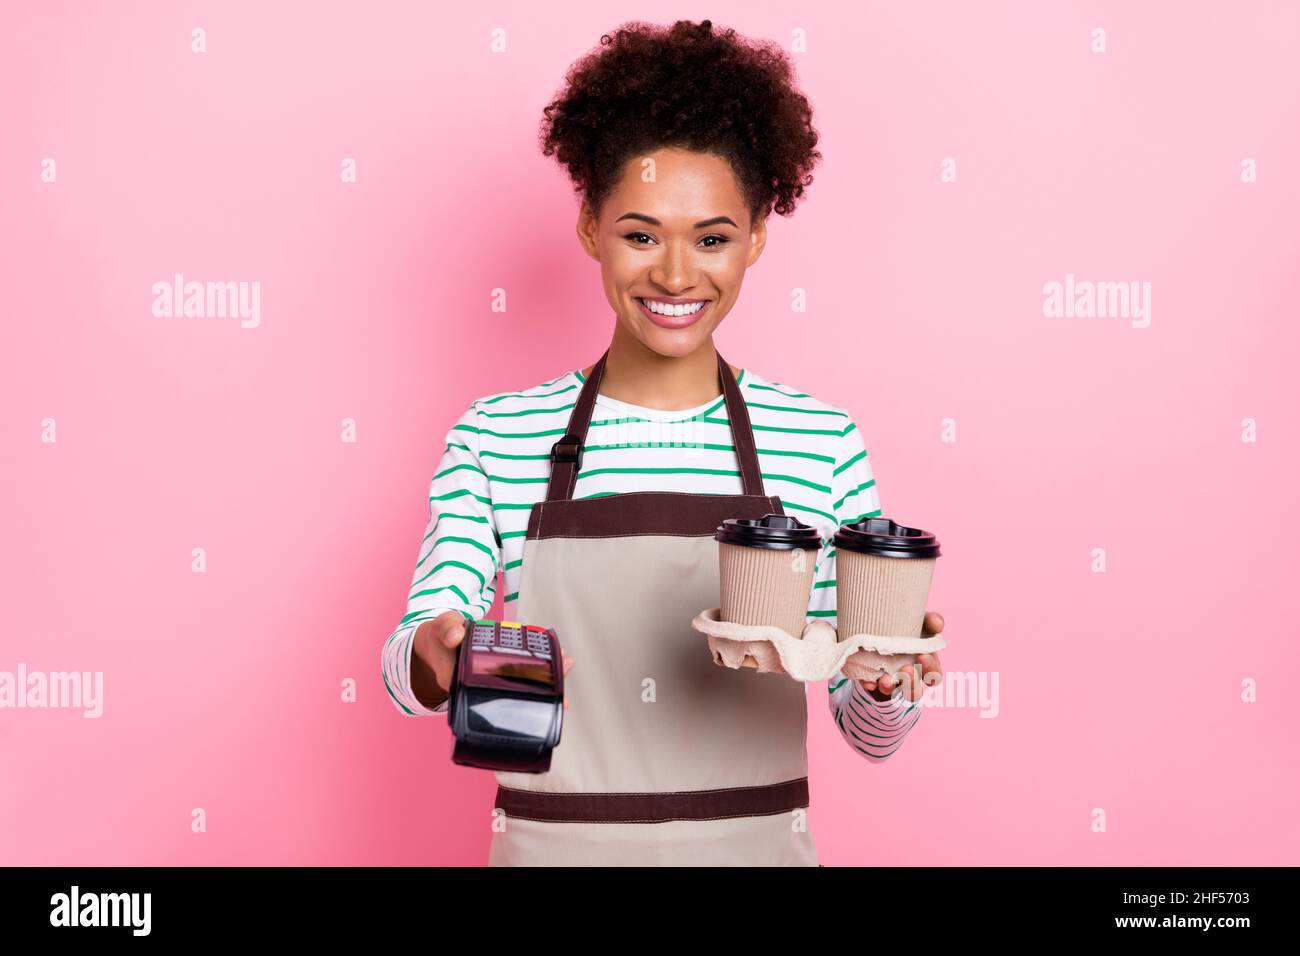 Photo de la jolie caissière gaie fille tenir café barista demande paiement porter tablier rayé chemise isolée couleur rose fond Banque D'Images